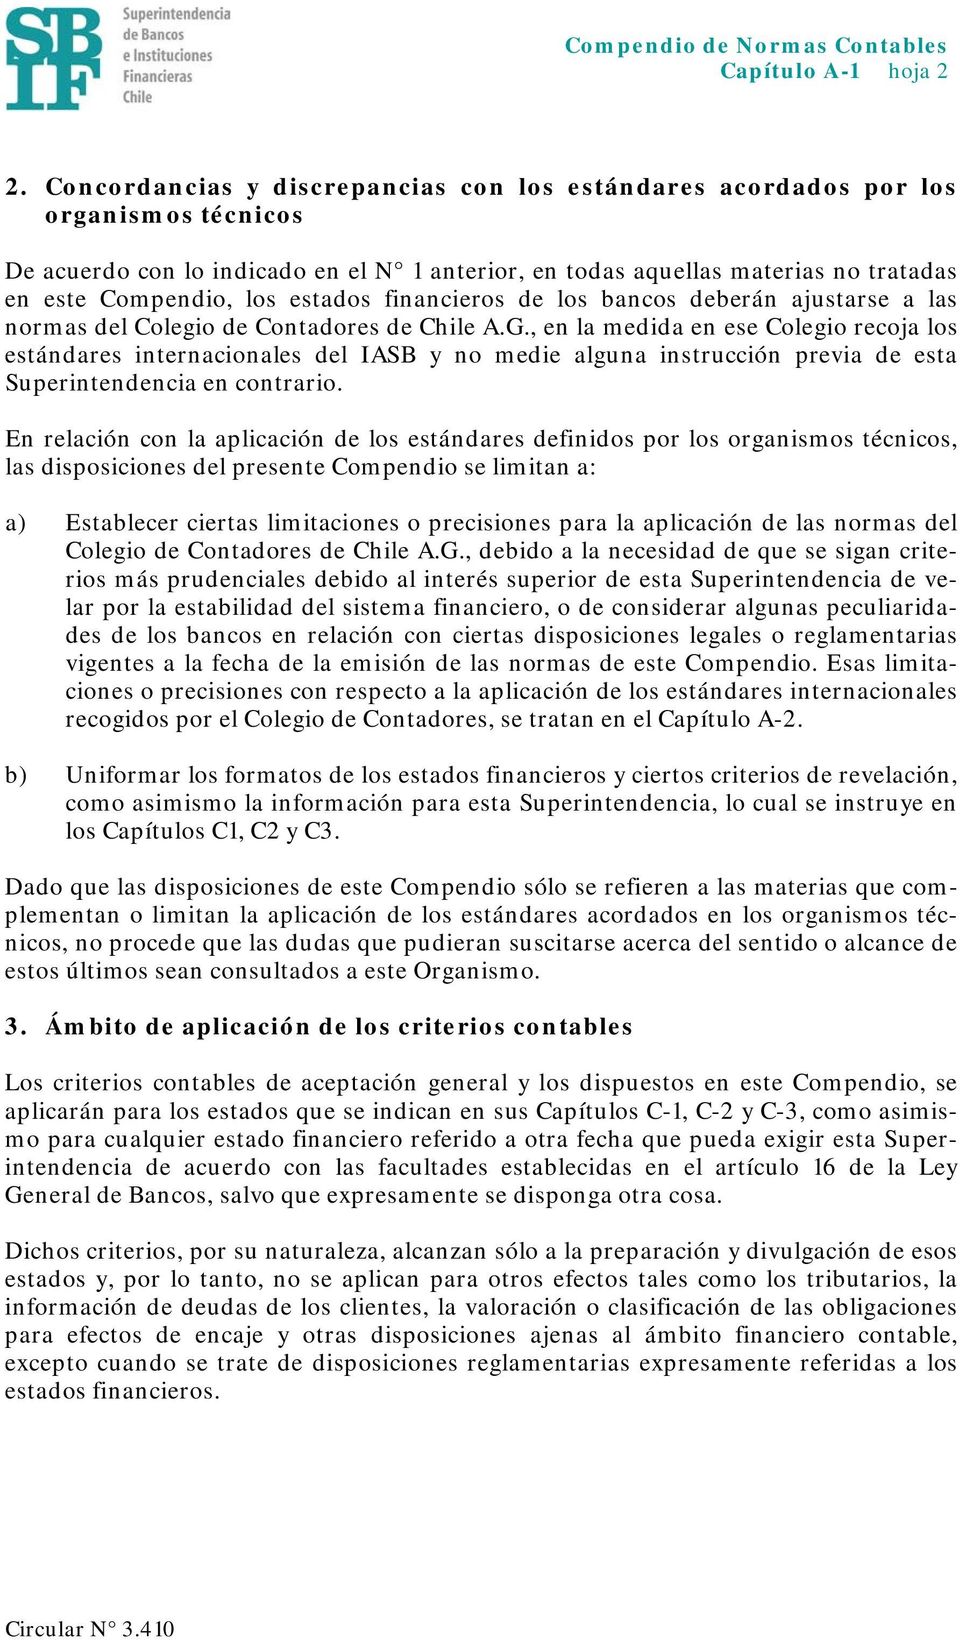 estados financieros de los bancos deberán ajustarse a las normas del Colegio de Contadores de Chile A.G.